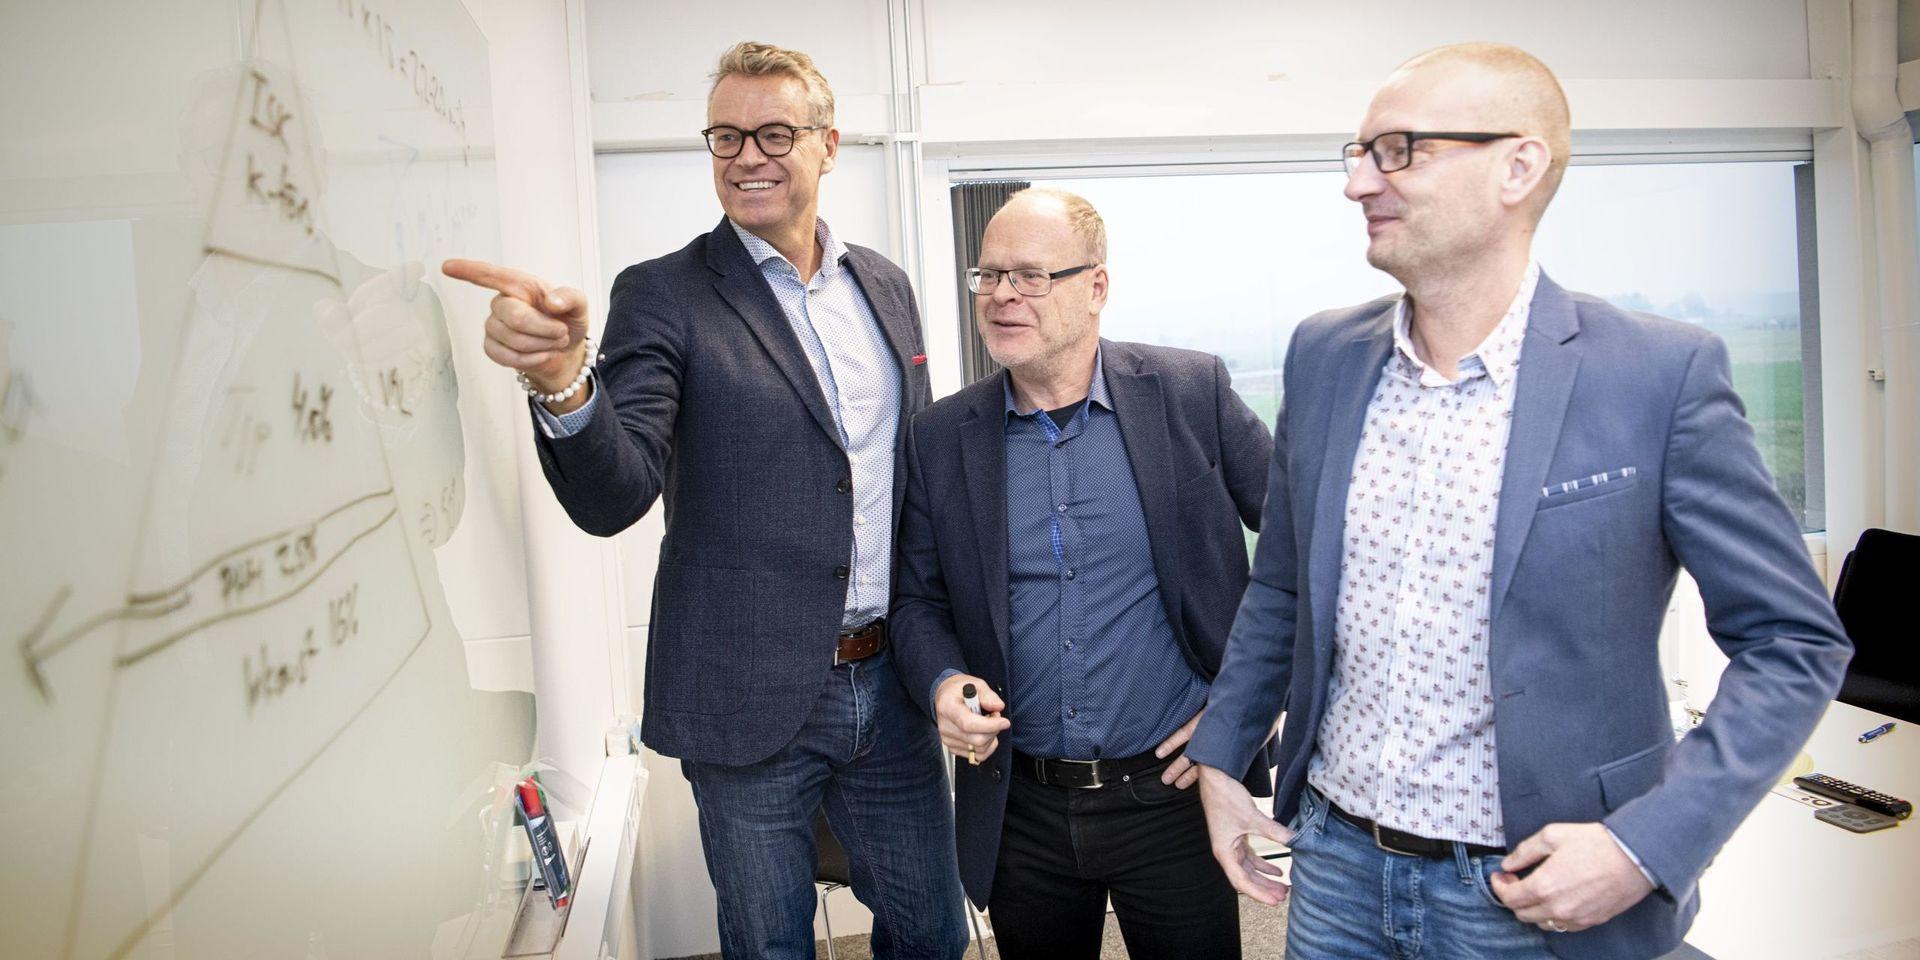 Från vänster: Stephan Artursson, Roger Isaksson och Sanny Erixon. Alla tre jobbar på Söderberg &amp; Partners i Halmstad.  Roger Isaksson och Sanny Erixon är pensionsrådgivare, Stephan Artursson är teamledare och jobbar mer med fokus på kapitalförvaltning.